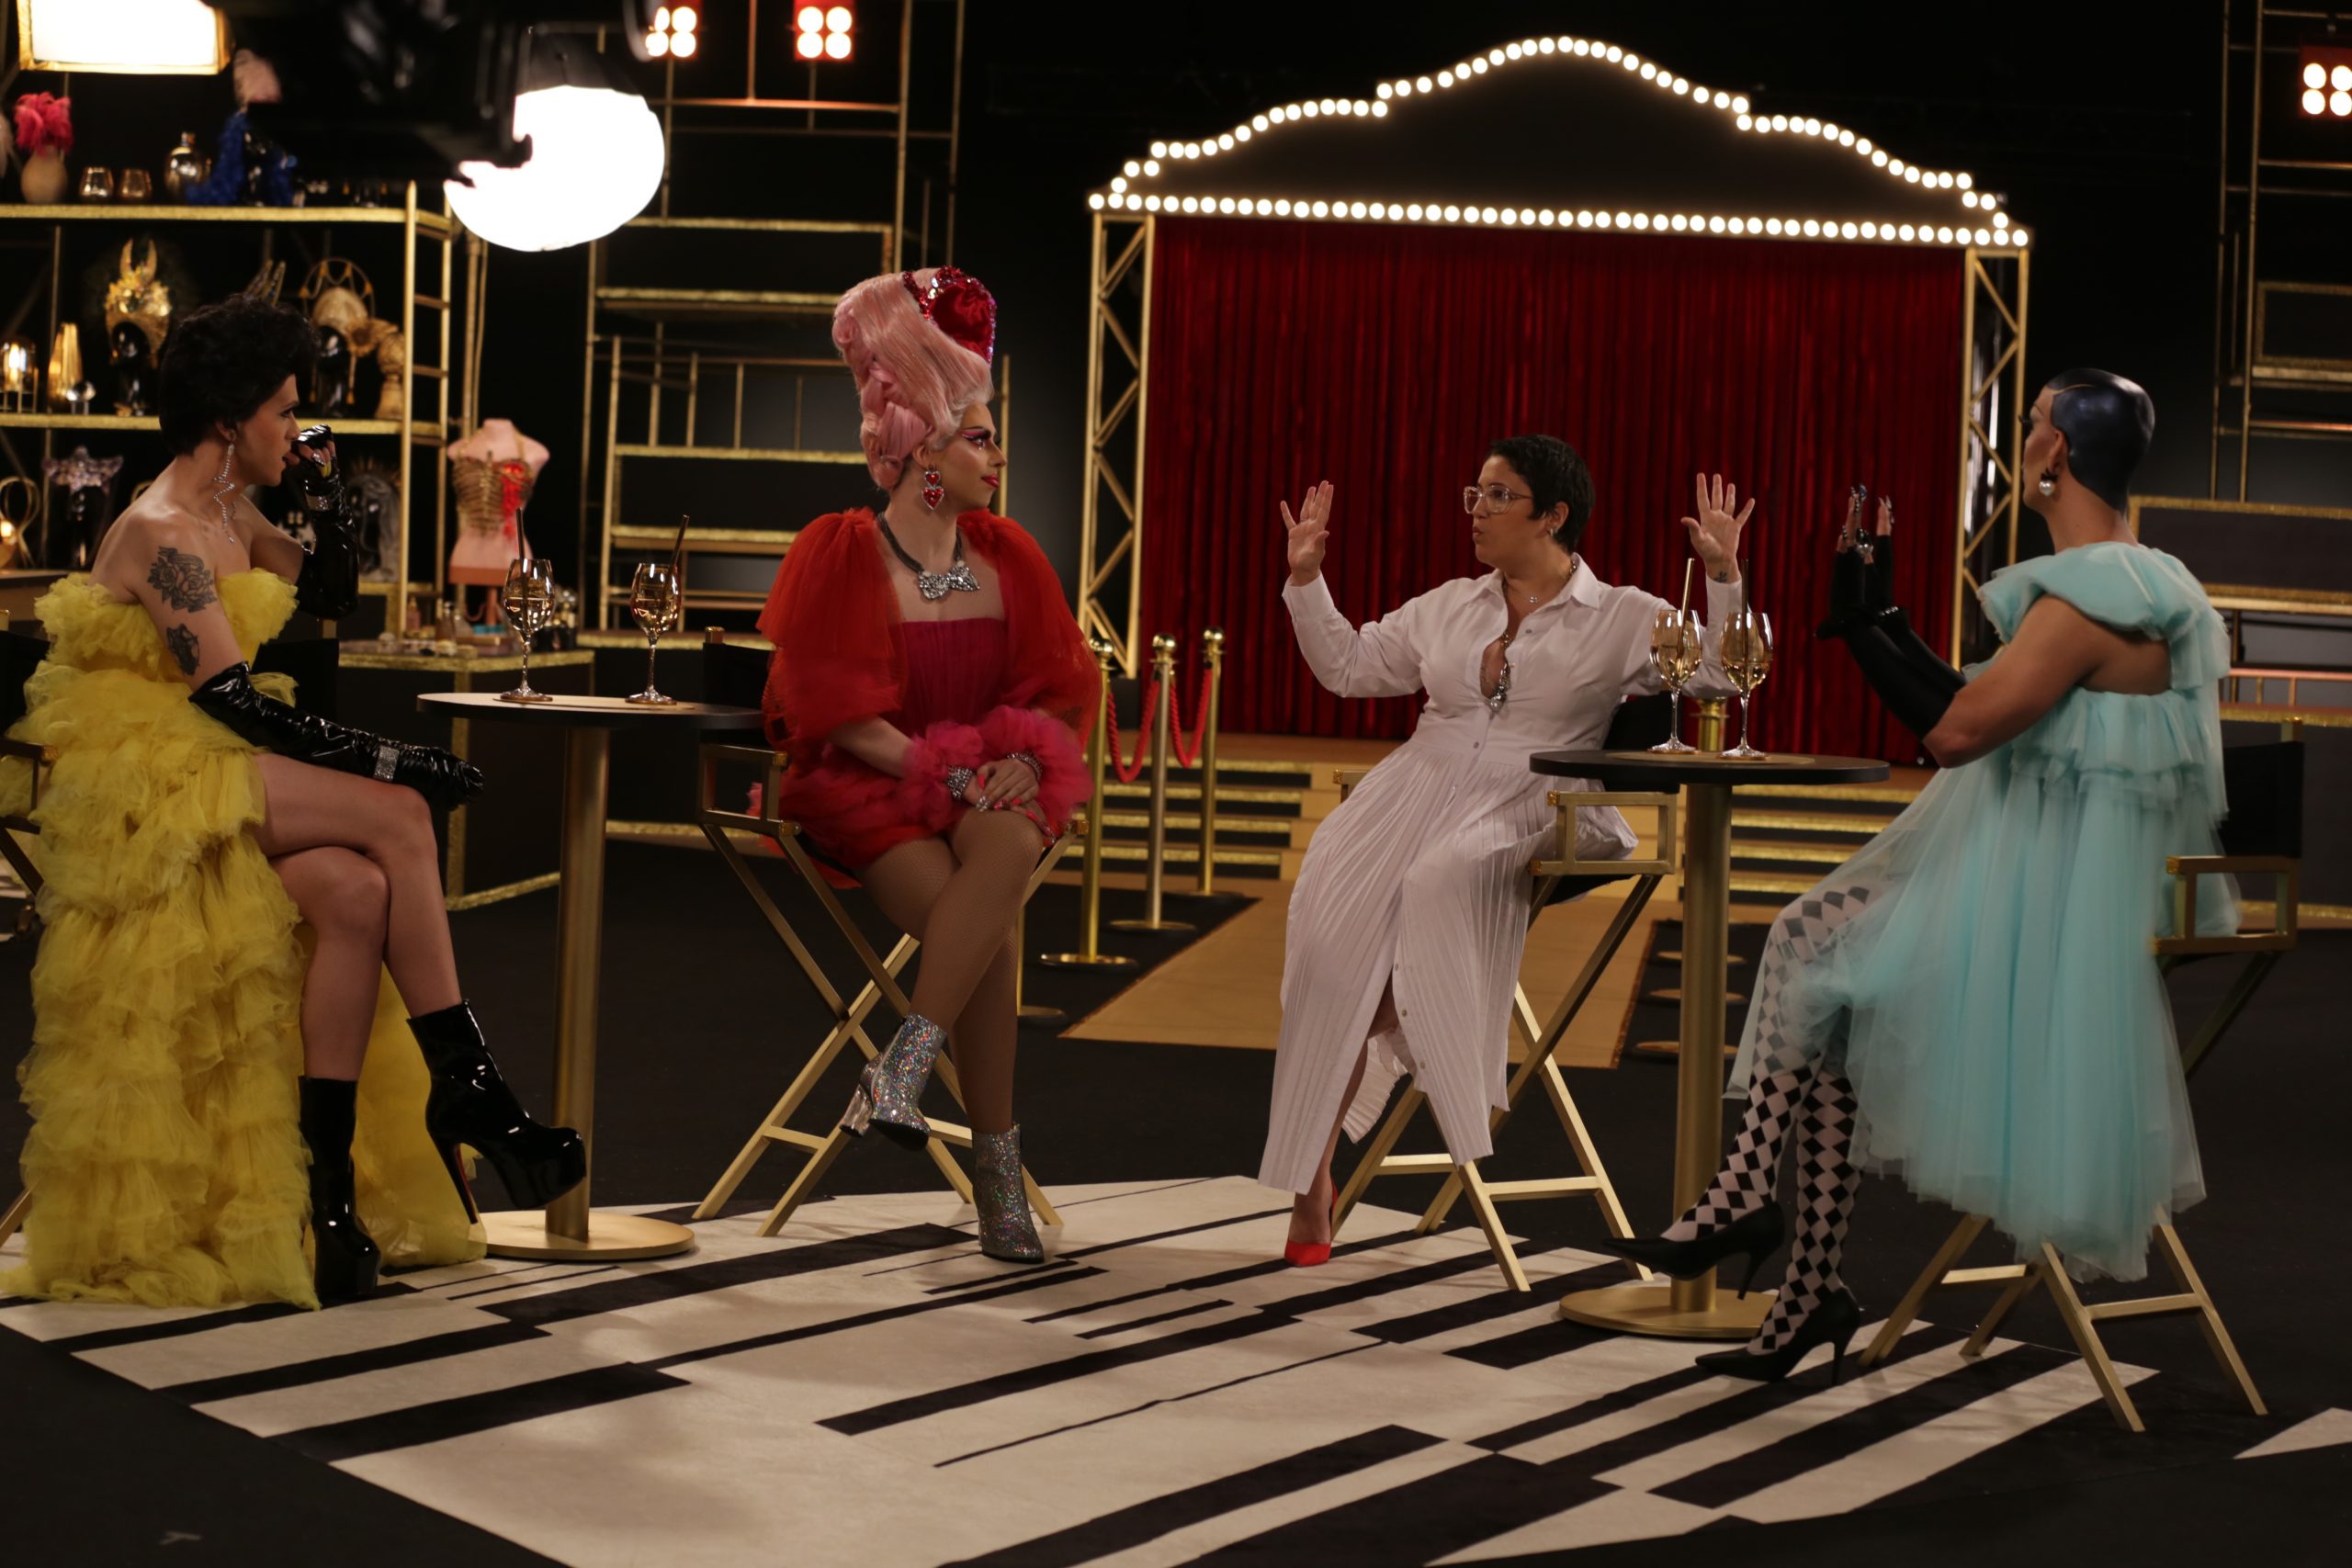 No spin-off de “Drag Me as a Queen”, as apresentadoras Penelopy Jean, Ikaro Kadoshi e Rita Von Hunty irão libertar as queens de celebridades como a cantora Maria Rita